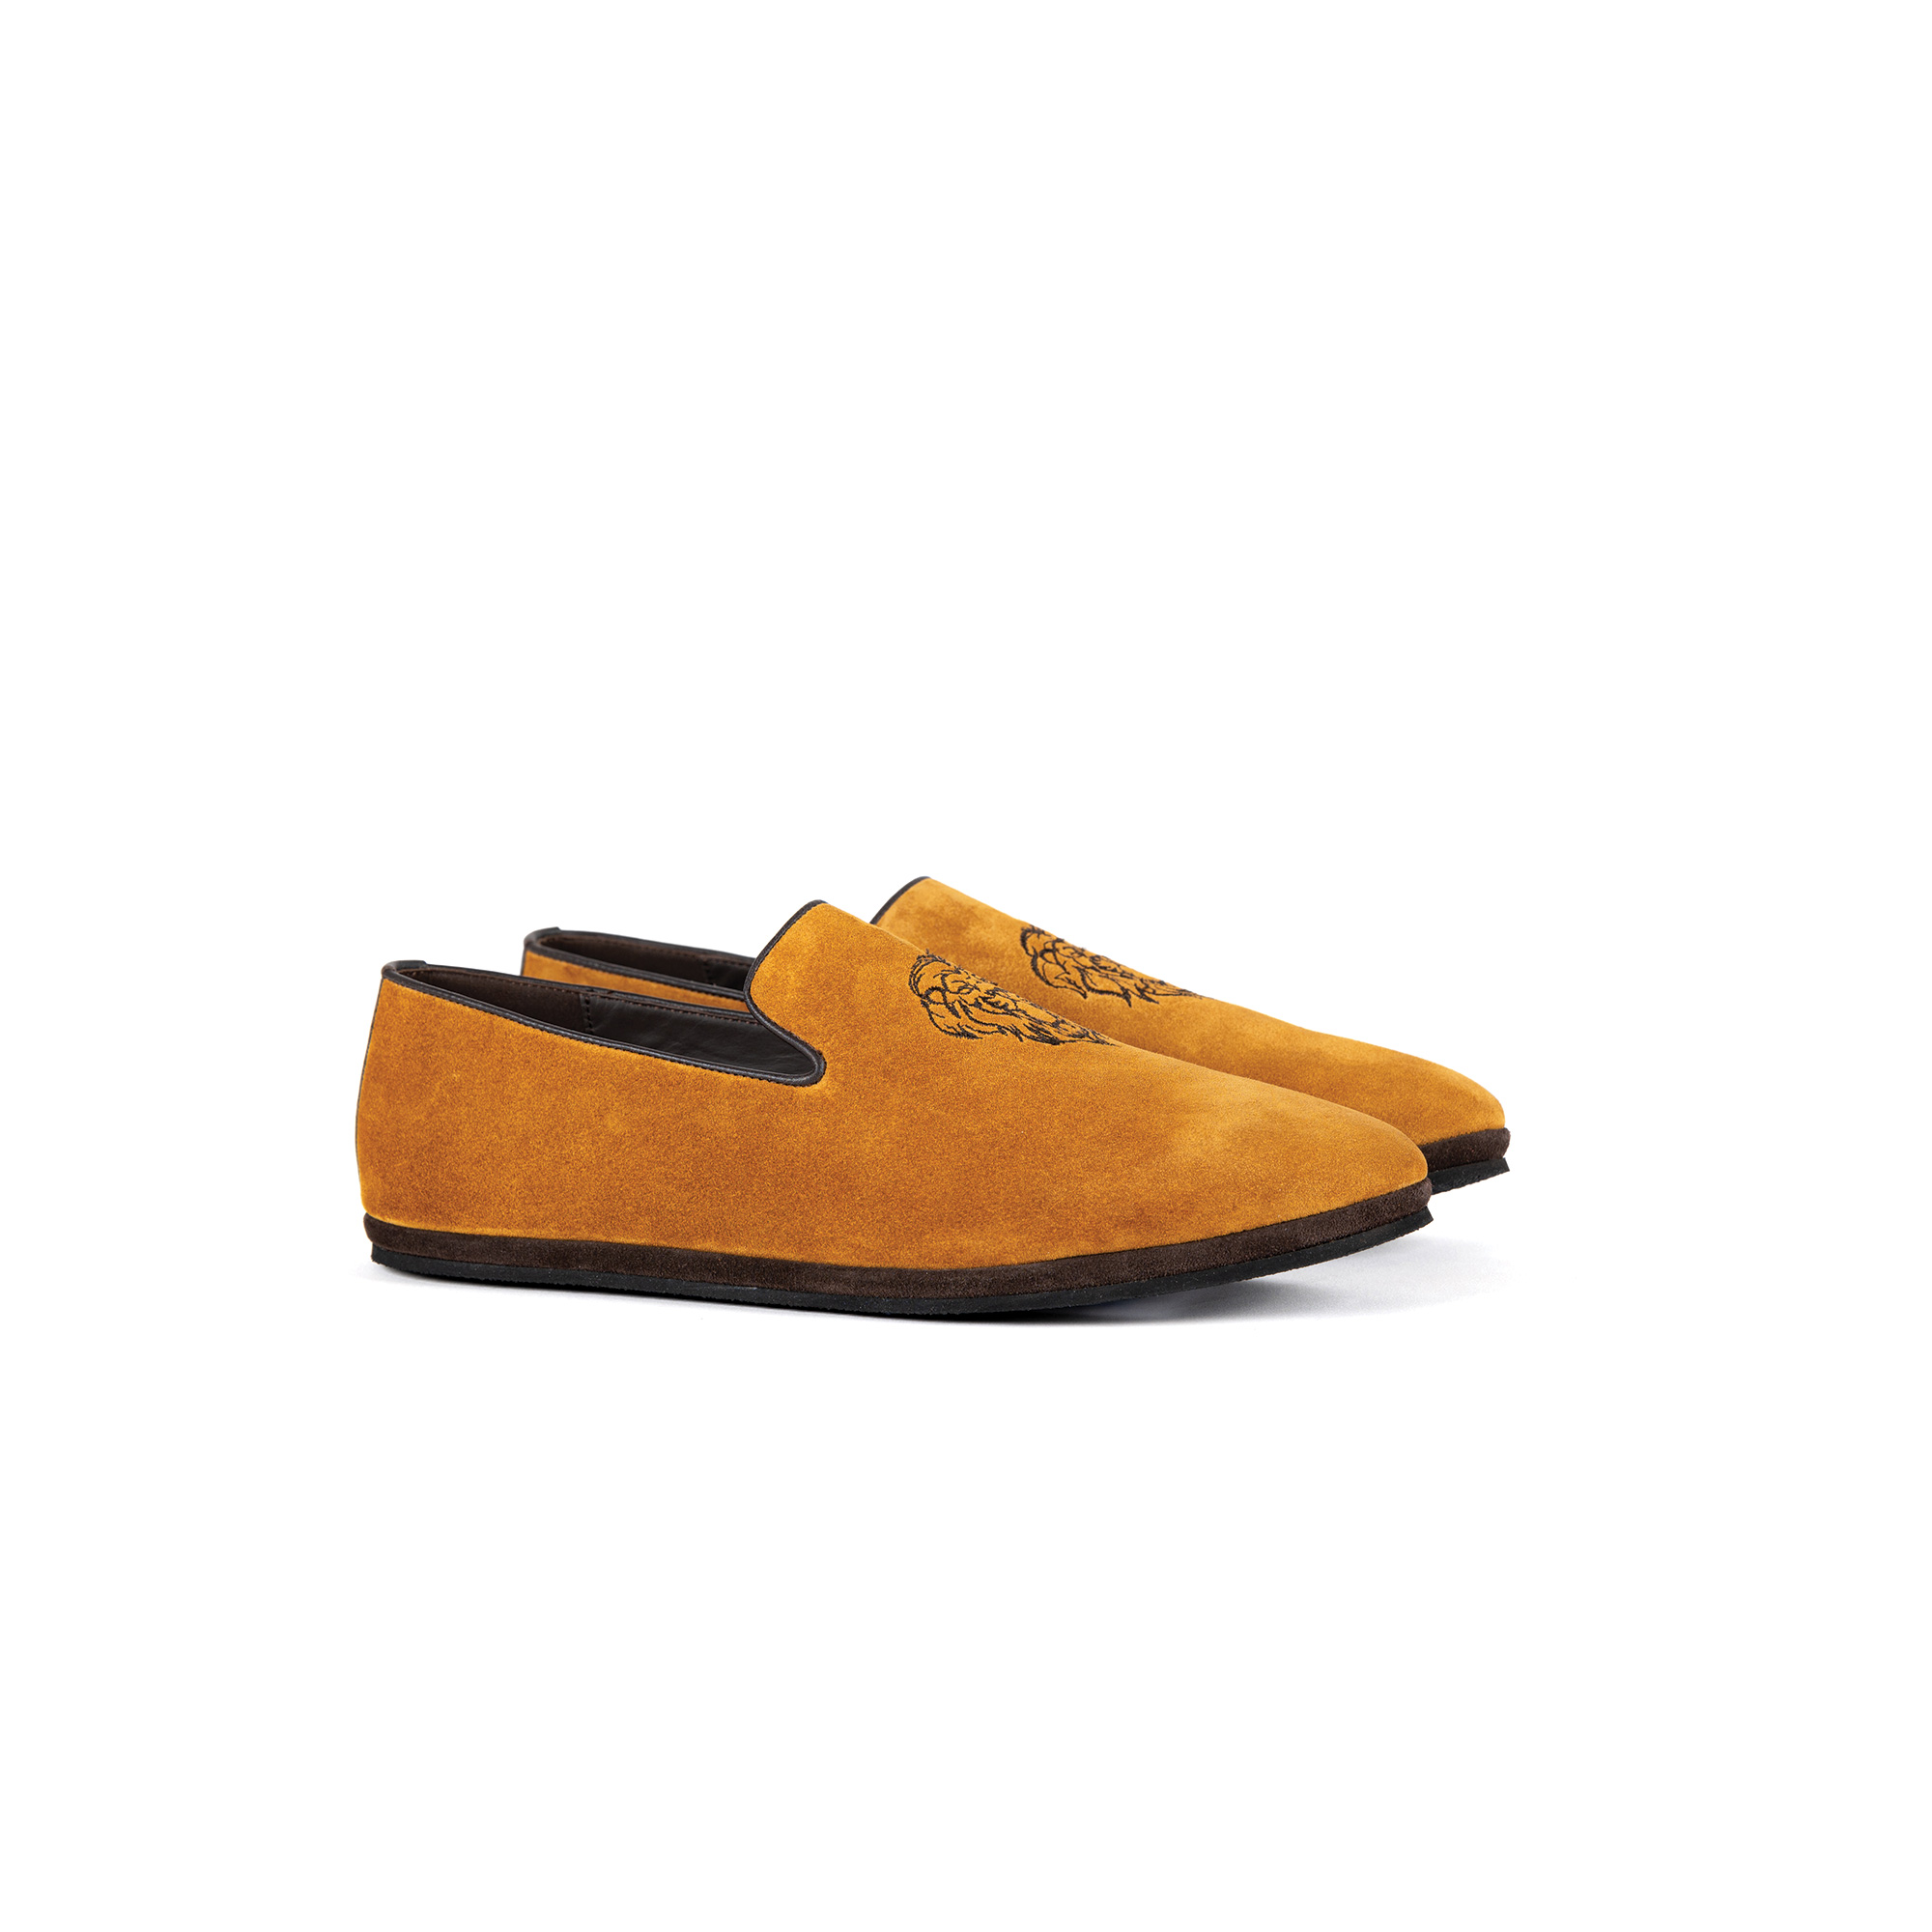 Pantofola interno classico in velour zafferano - Farfalla italian slippers